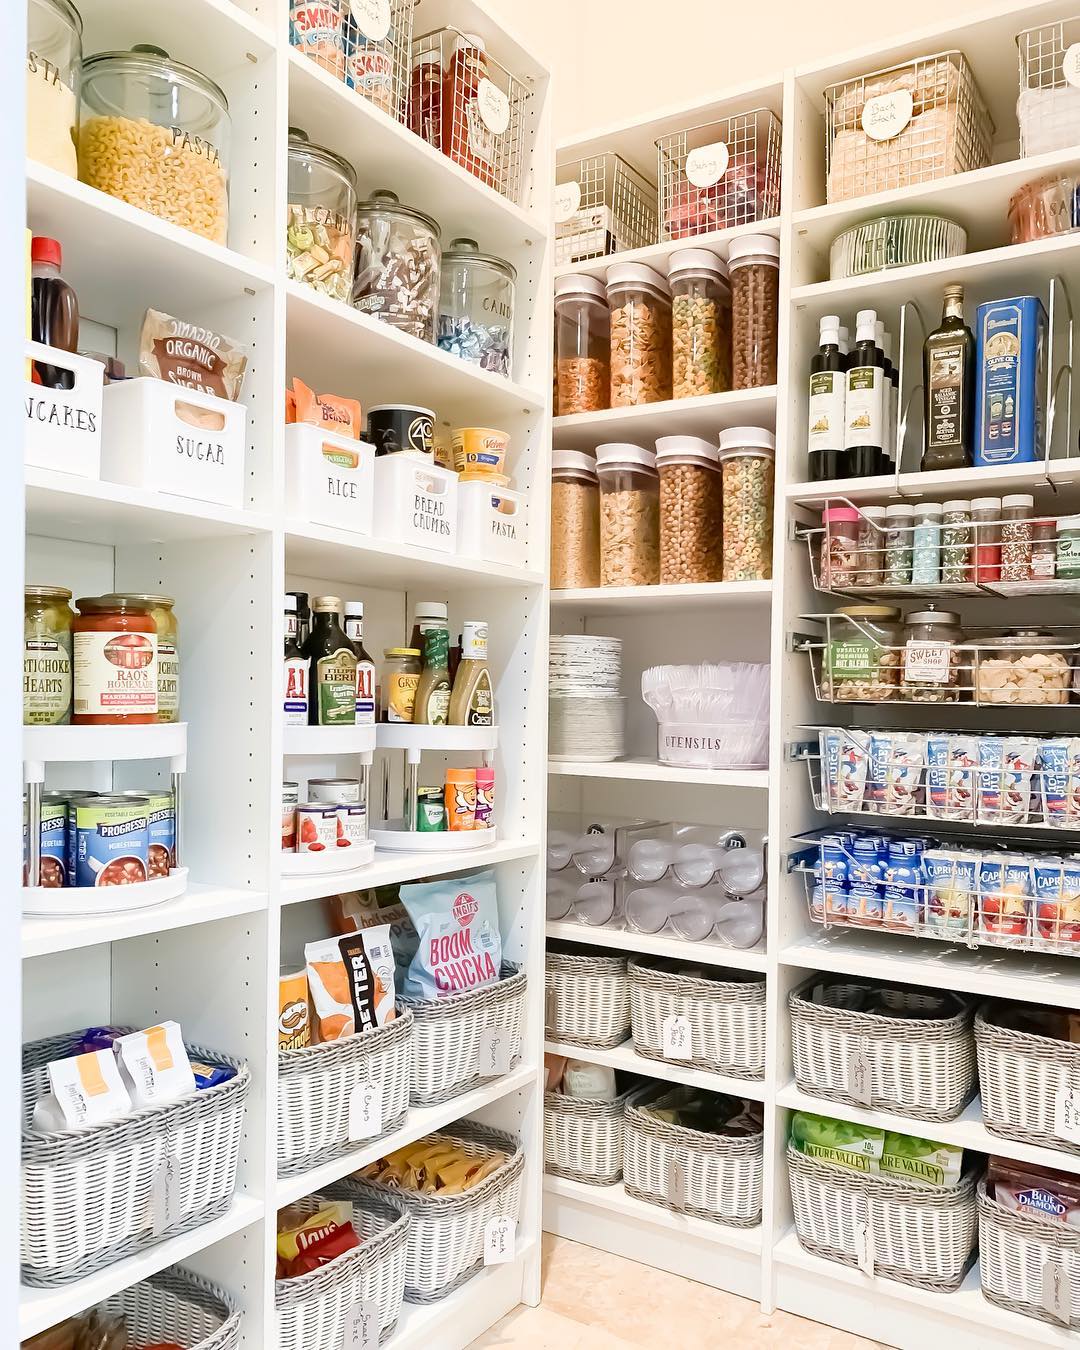 Our Best Small Kitchen Storage Ideas